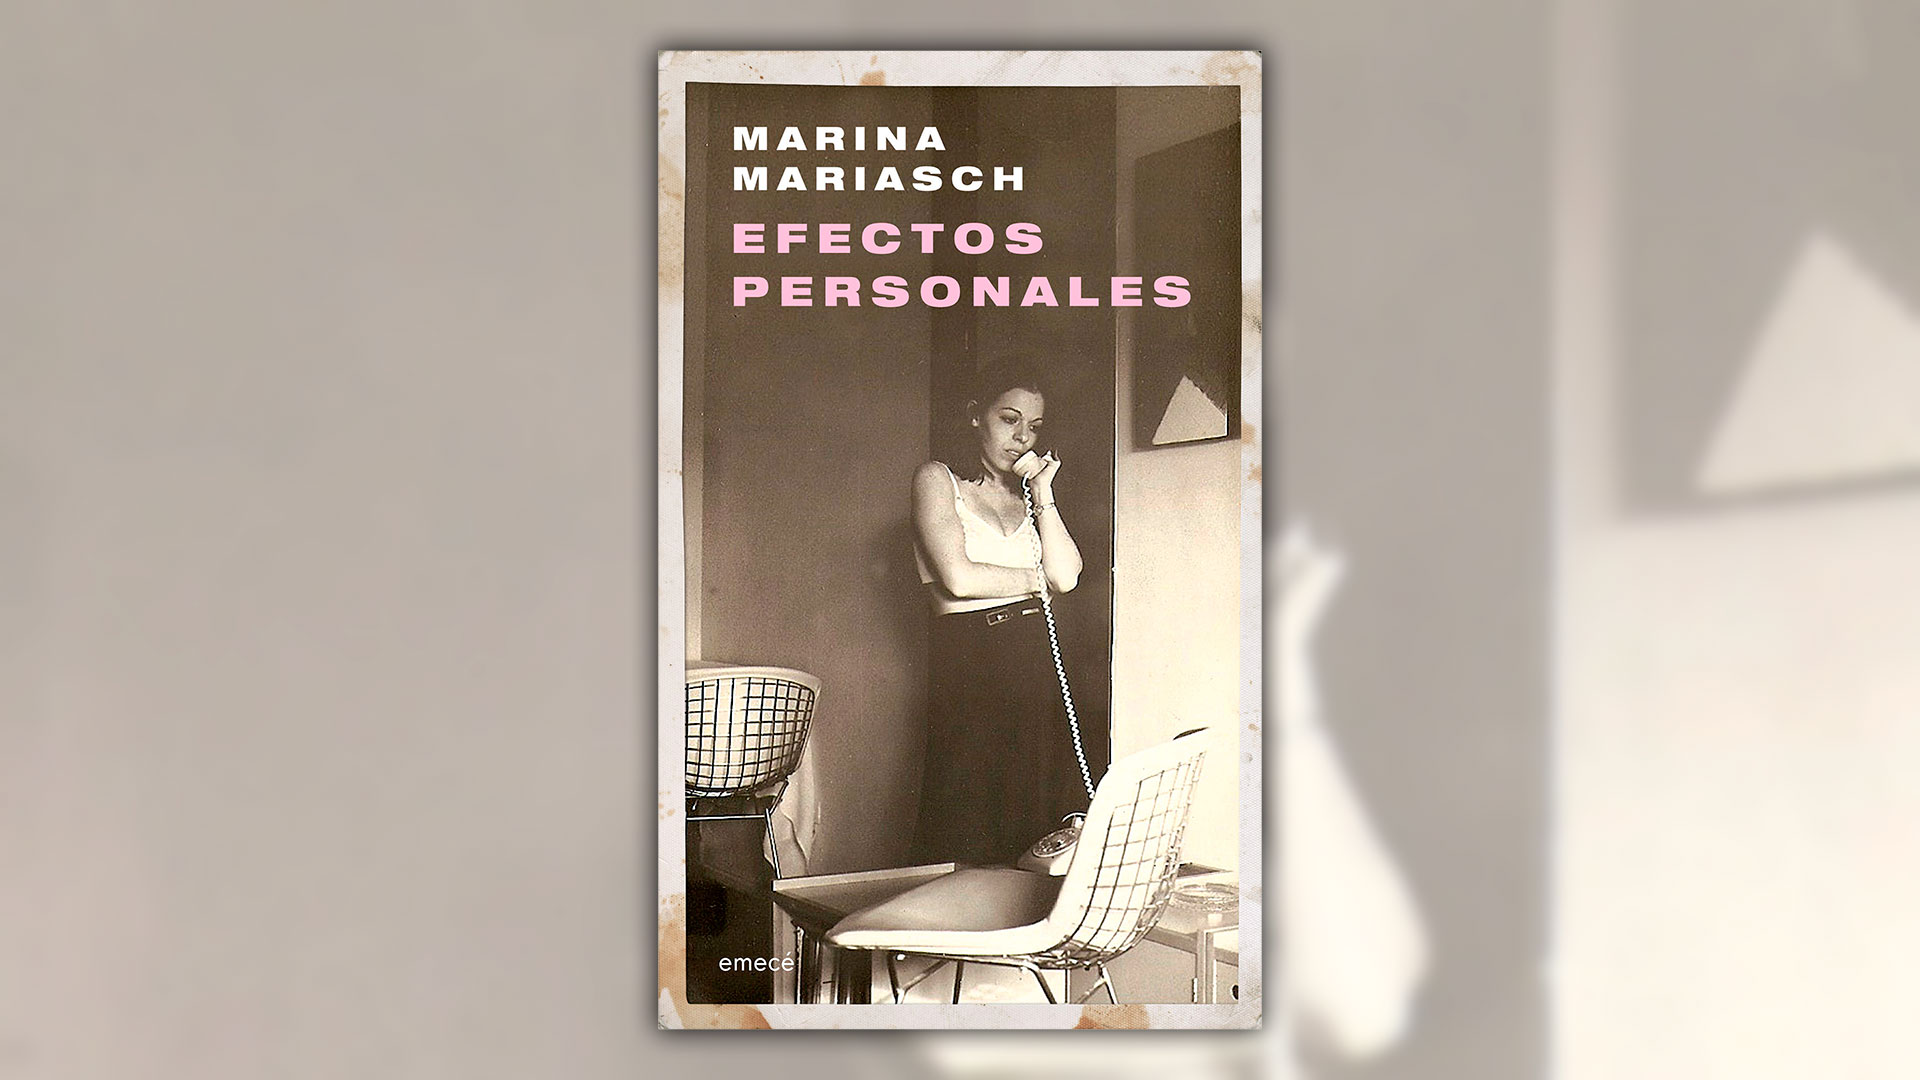 Marina Mariasch escribió la gran autoficción del año.